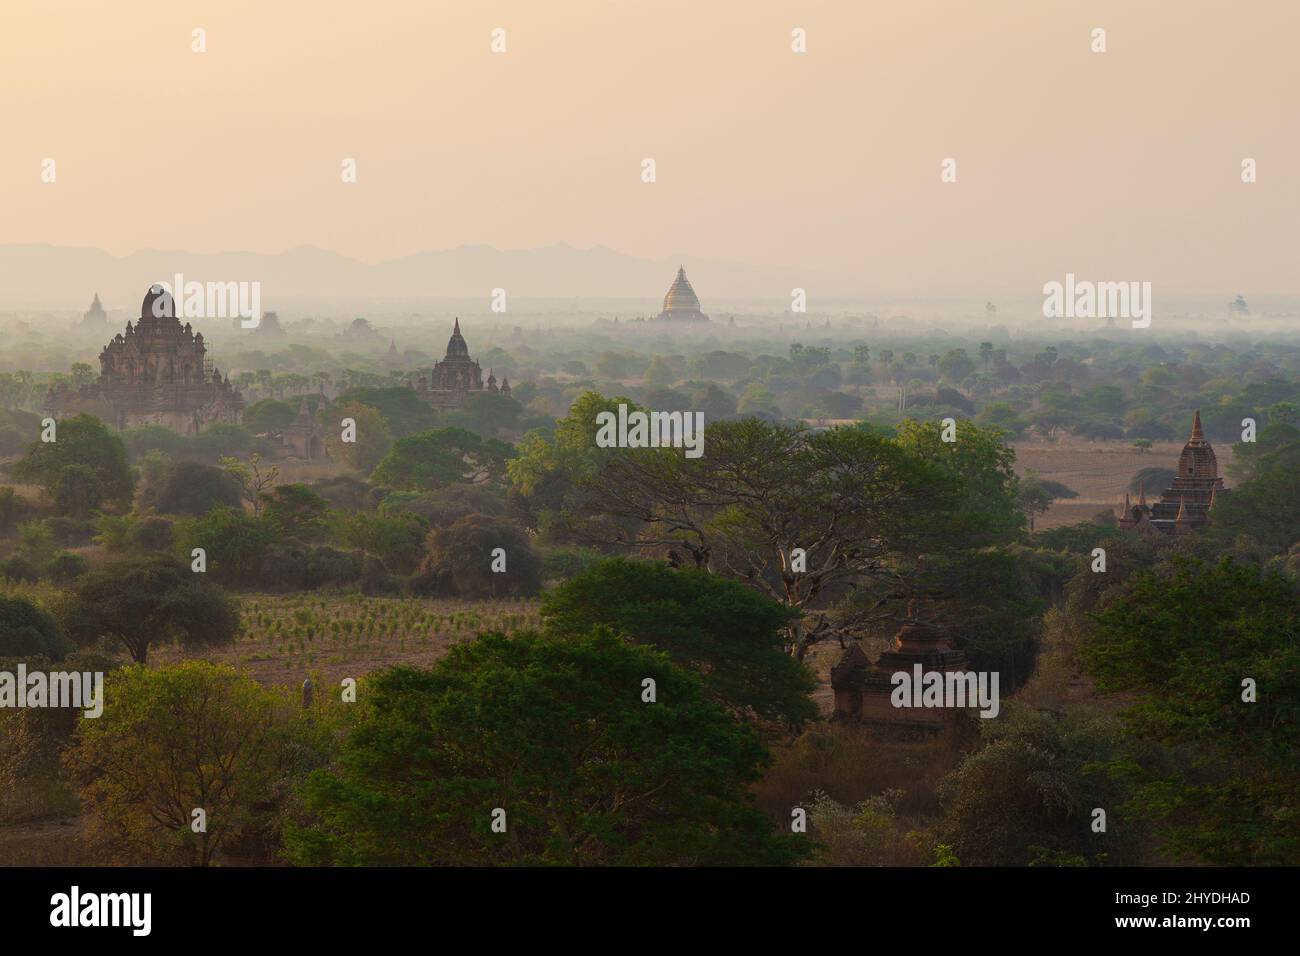 Vista panoramica di molti templi, pagode e altri vecchi edifici presso l'antica pianura di Bagan in Myanmar (Birmania), all'alba. Foto Stock